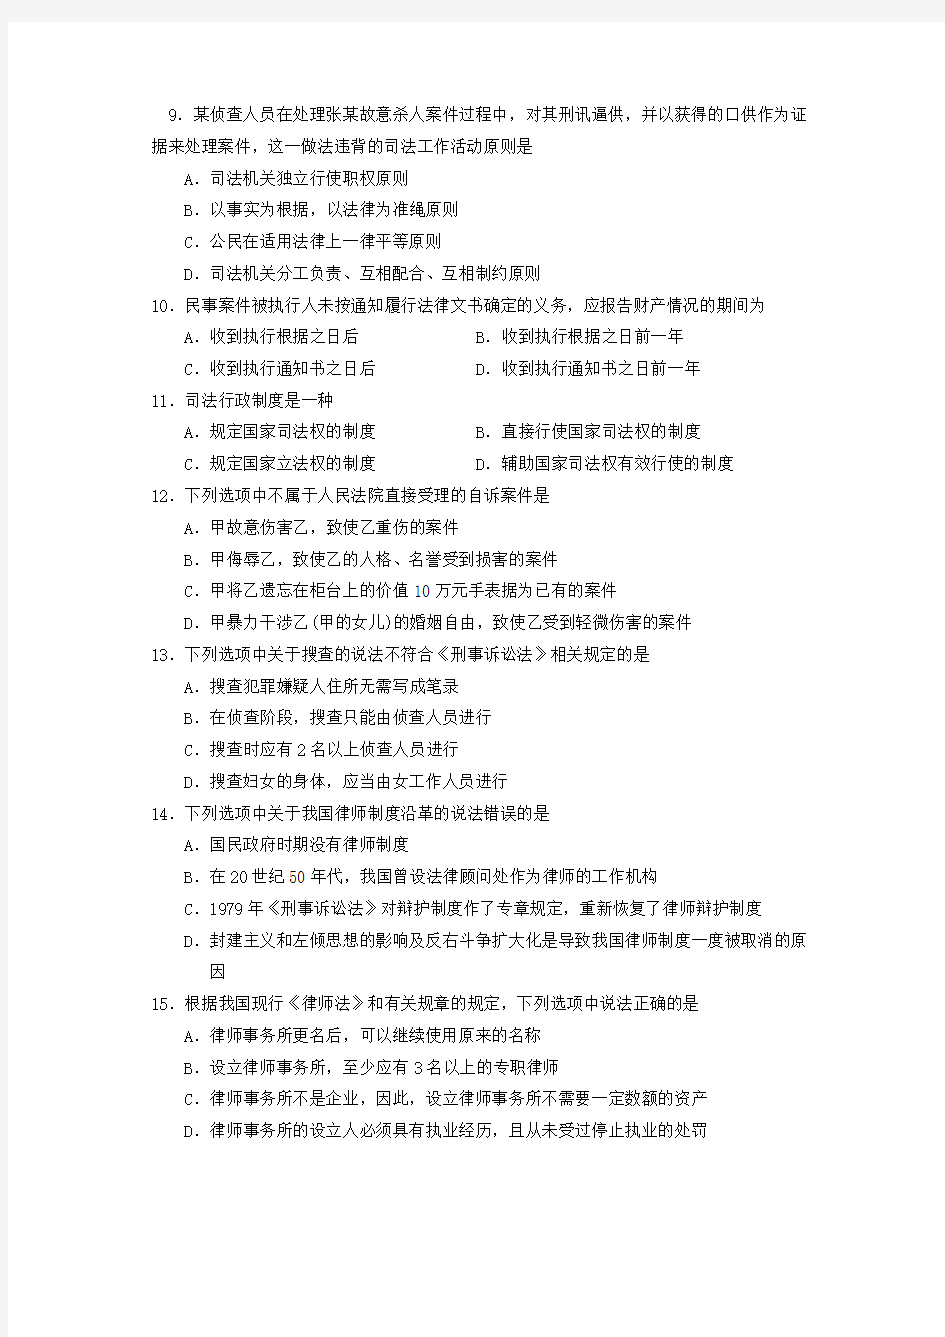 2014年中国司法制度真题试卷高等教育自学考试全国统一命题考试